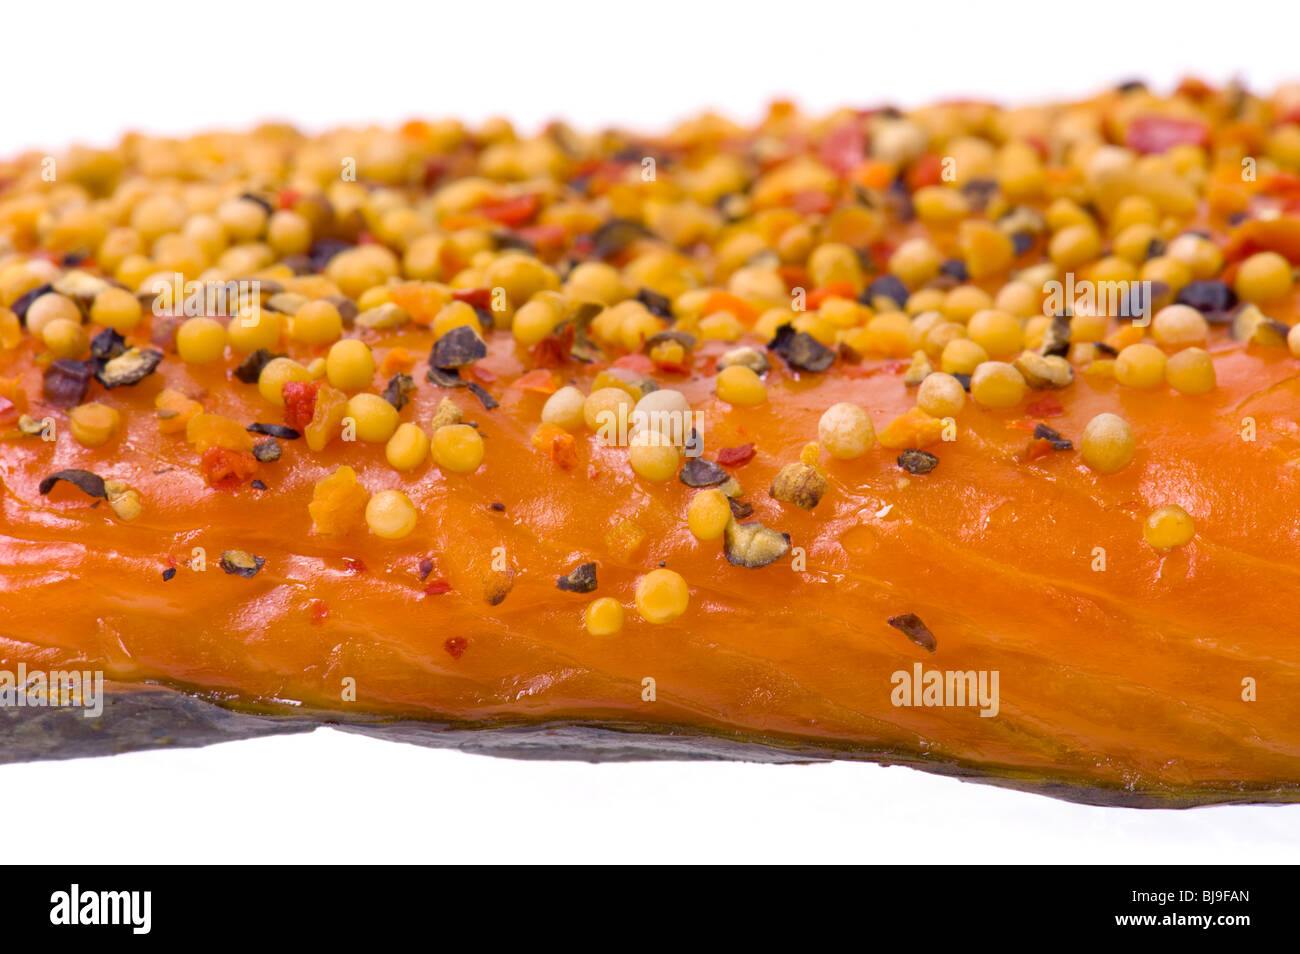 Stremel - le saumon fumé à chaud Stremel morceaux de filet de poisson Saumon aux poivrons et épices paprika poivre graines de moutarde Oignon s fumée Banque D'Images